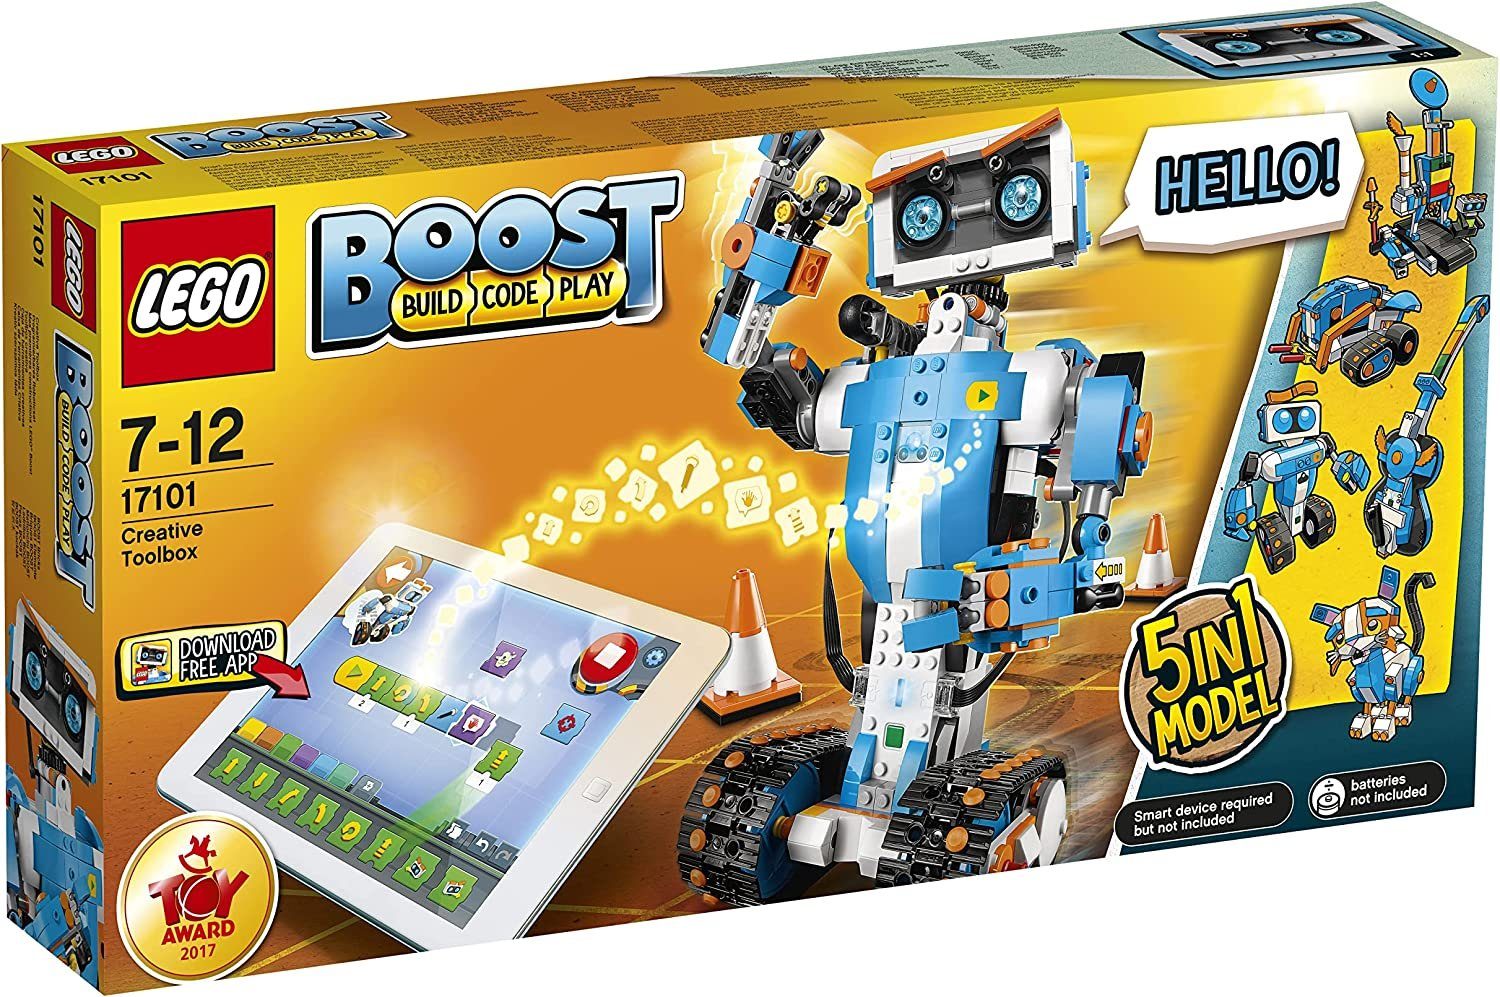 17101 St) Boost Roboticset, (847 Programmierbares LEGO® Spielbausteine